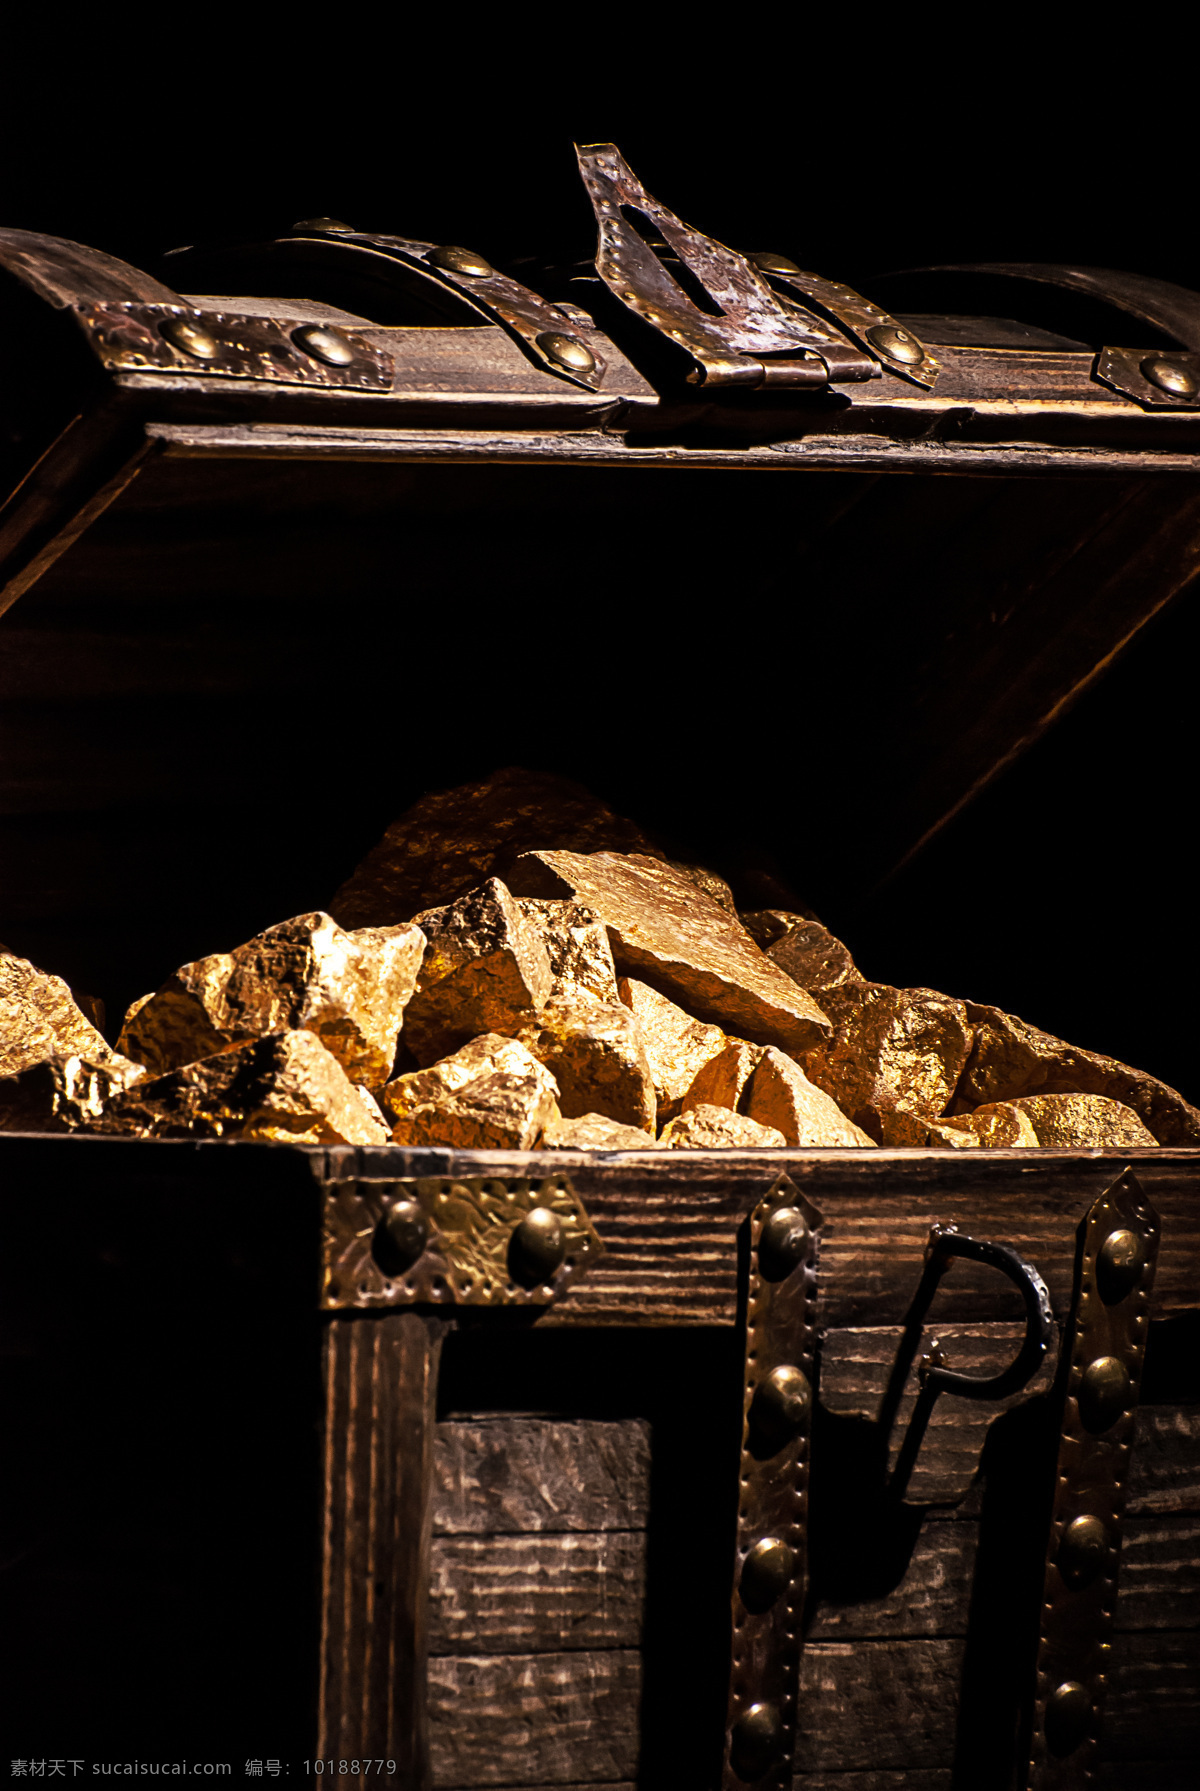 宝 箱 里 黄金 石头 宝箱 箱子 财富 金子 黄金石头 金融货币 金融财经 商务金融